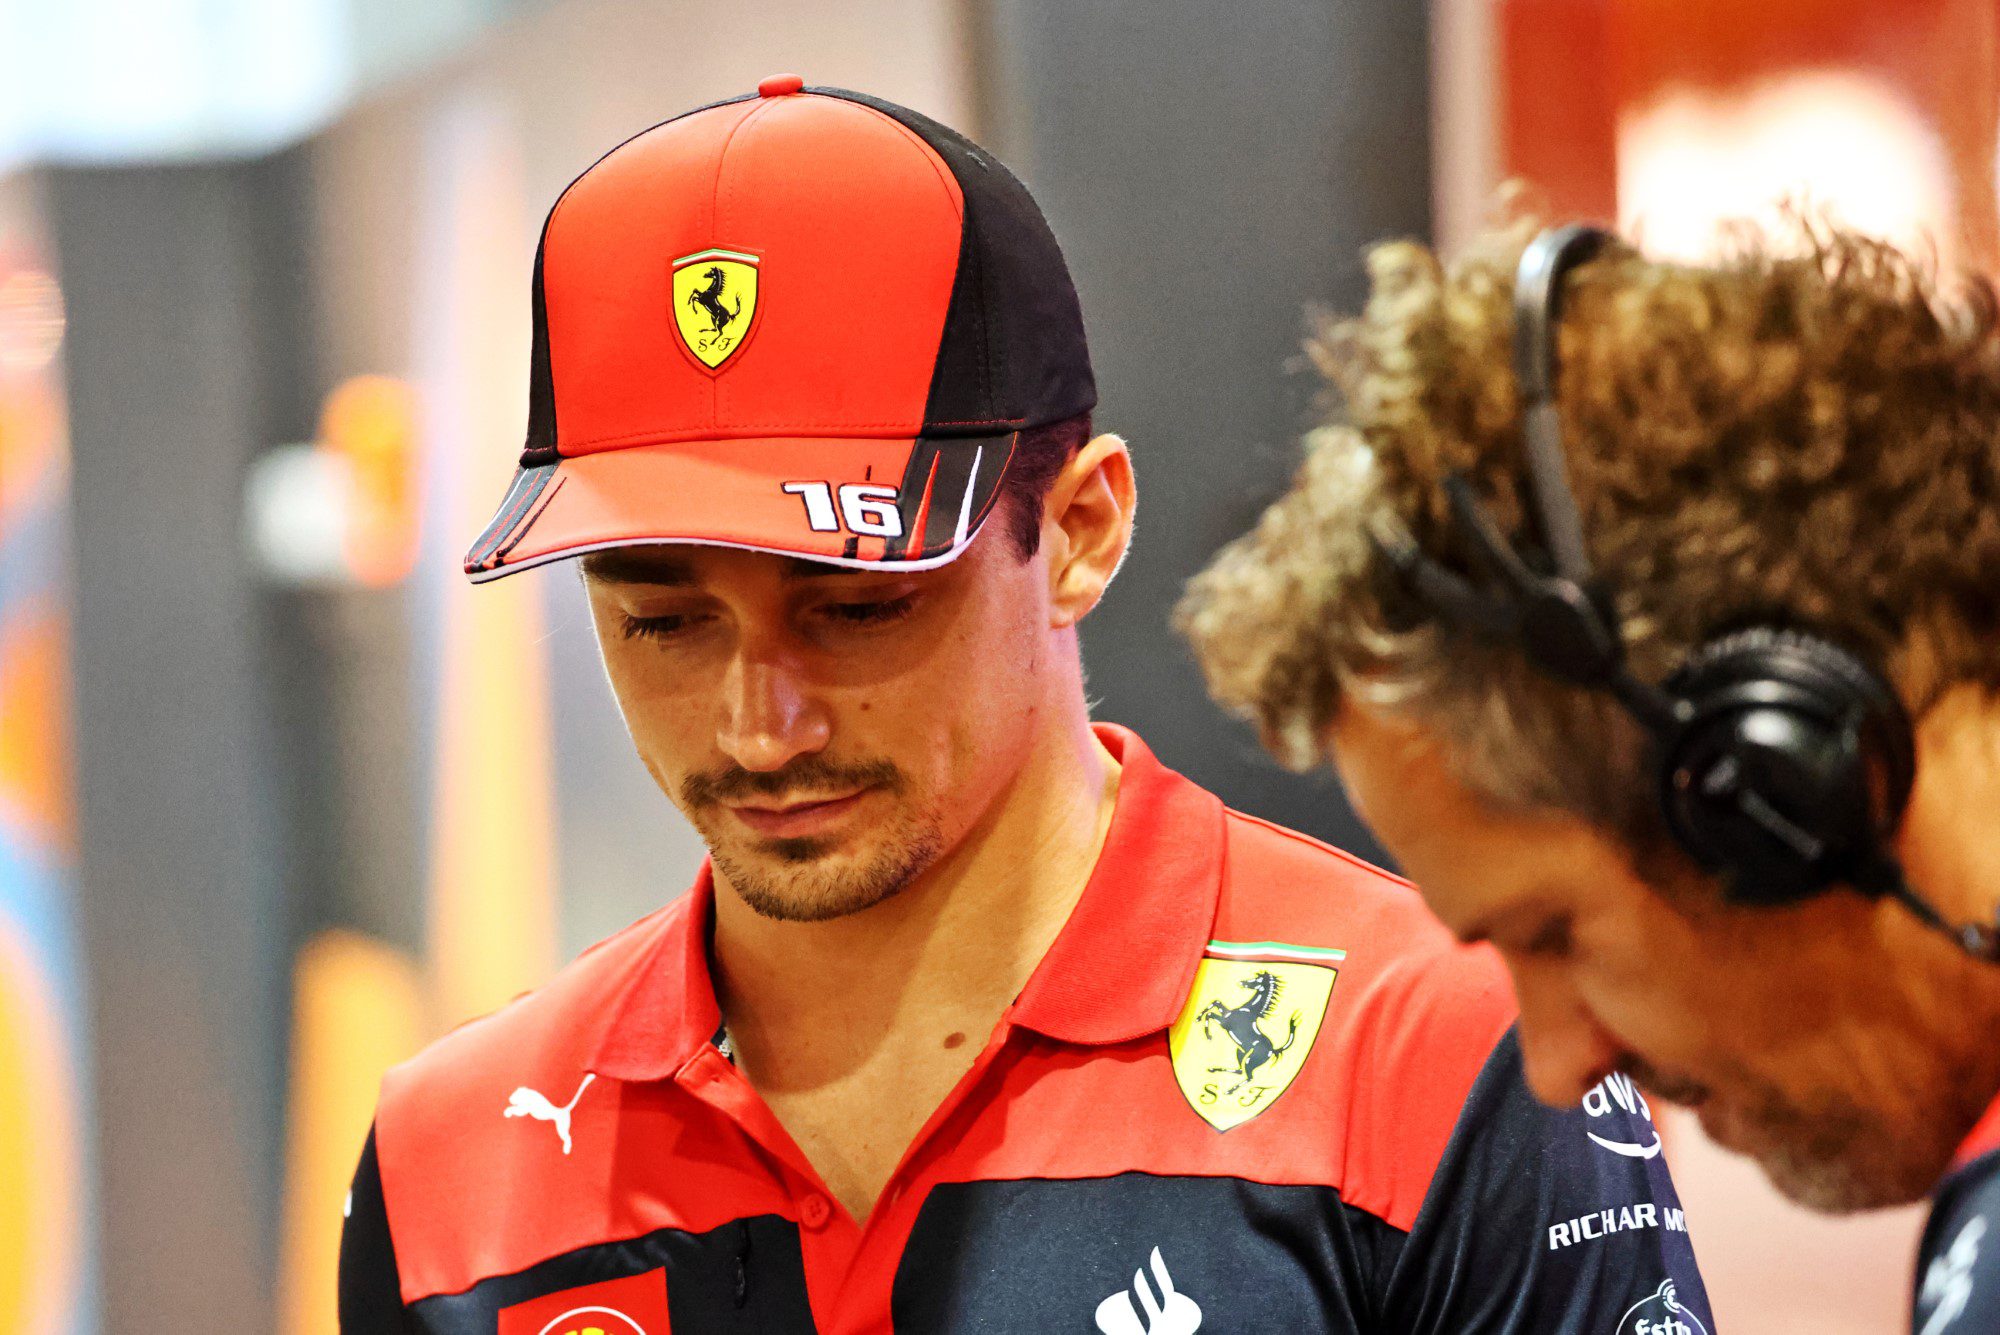 Las posibilidades de título de Leclerc socavadas por los errores de Ferrari